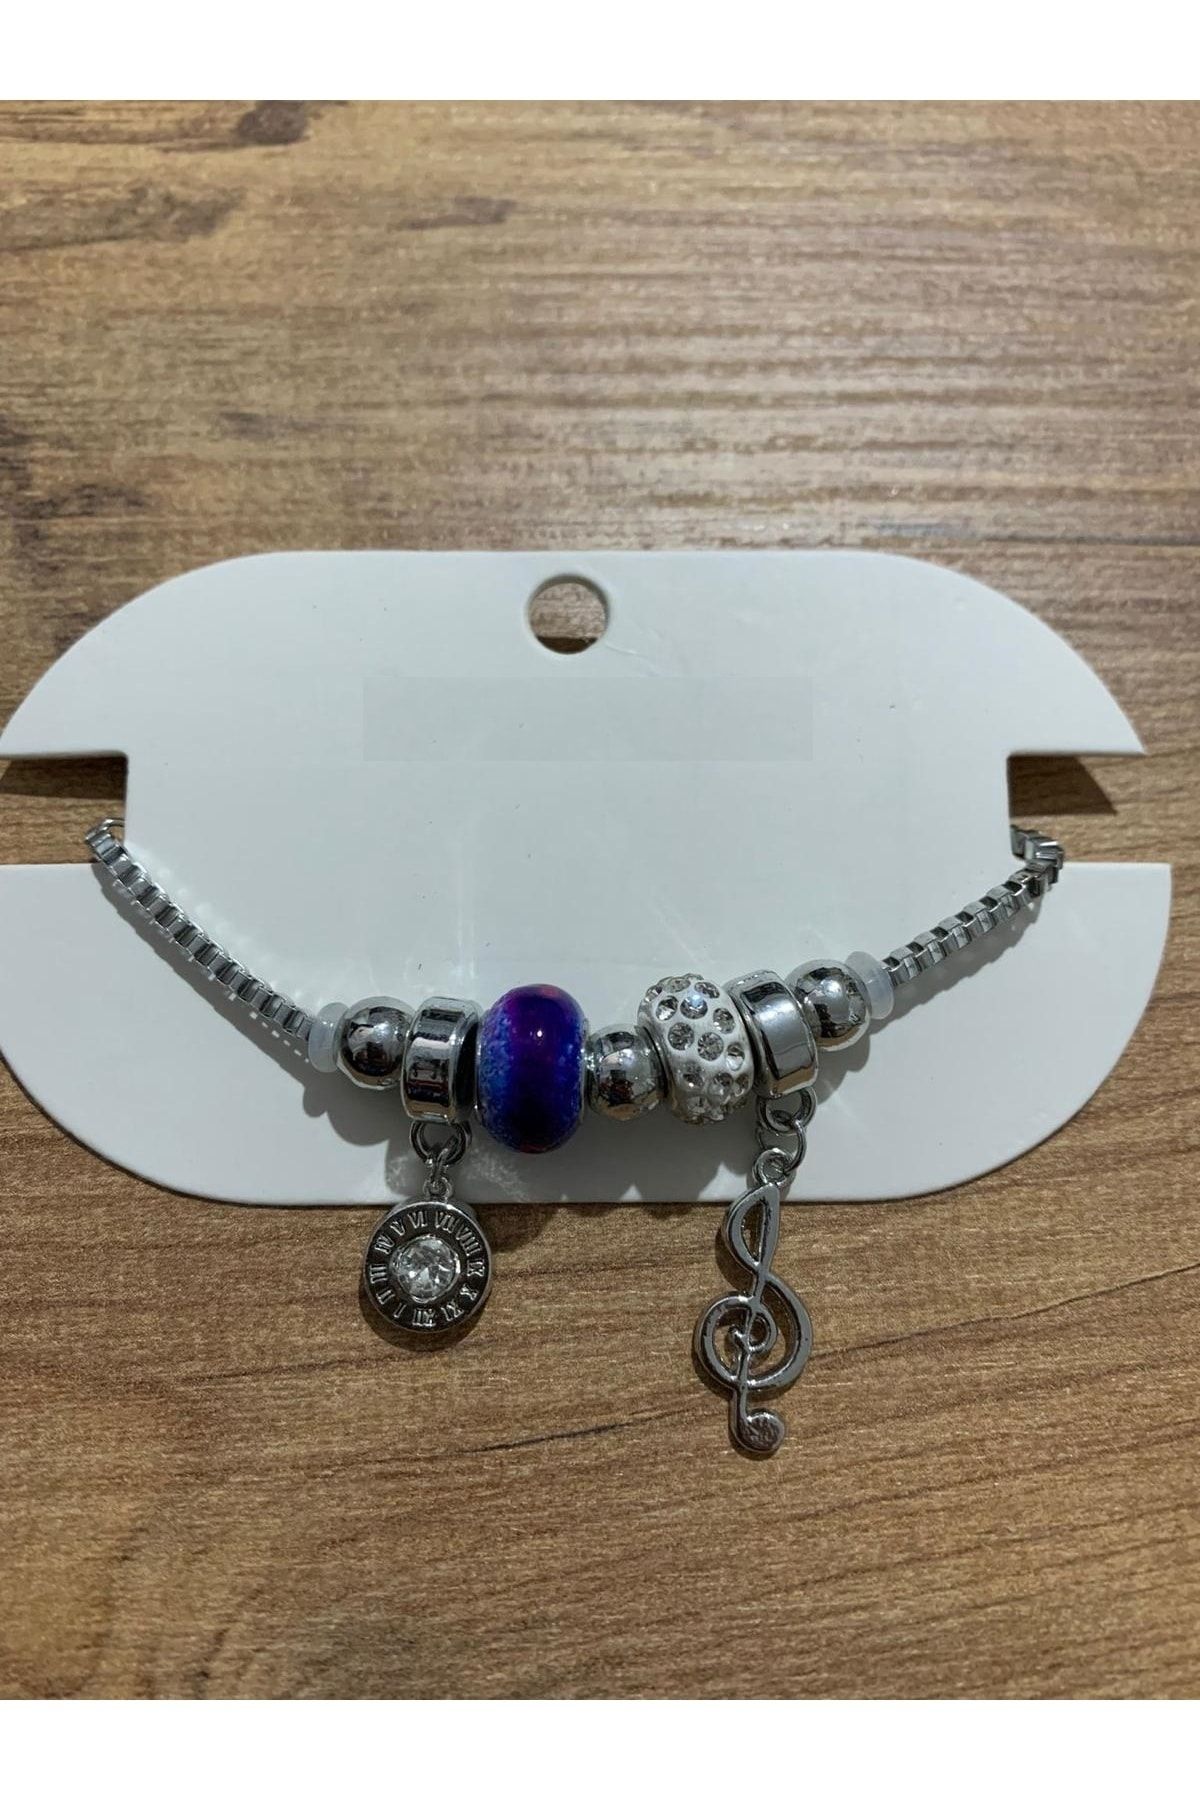 İYİ MODA Jewellery Charm Bileklik Modelleri